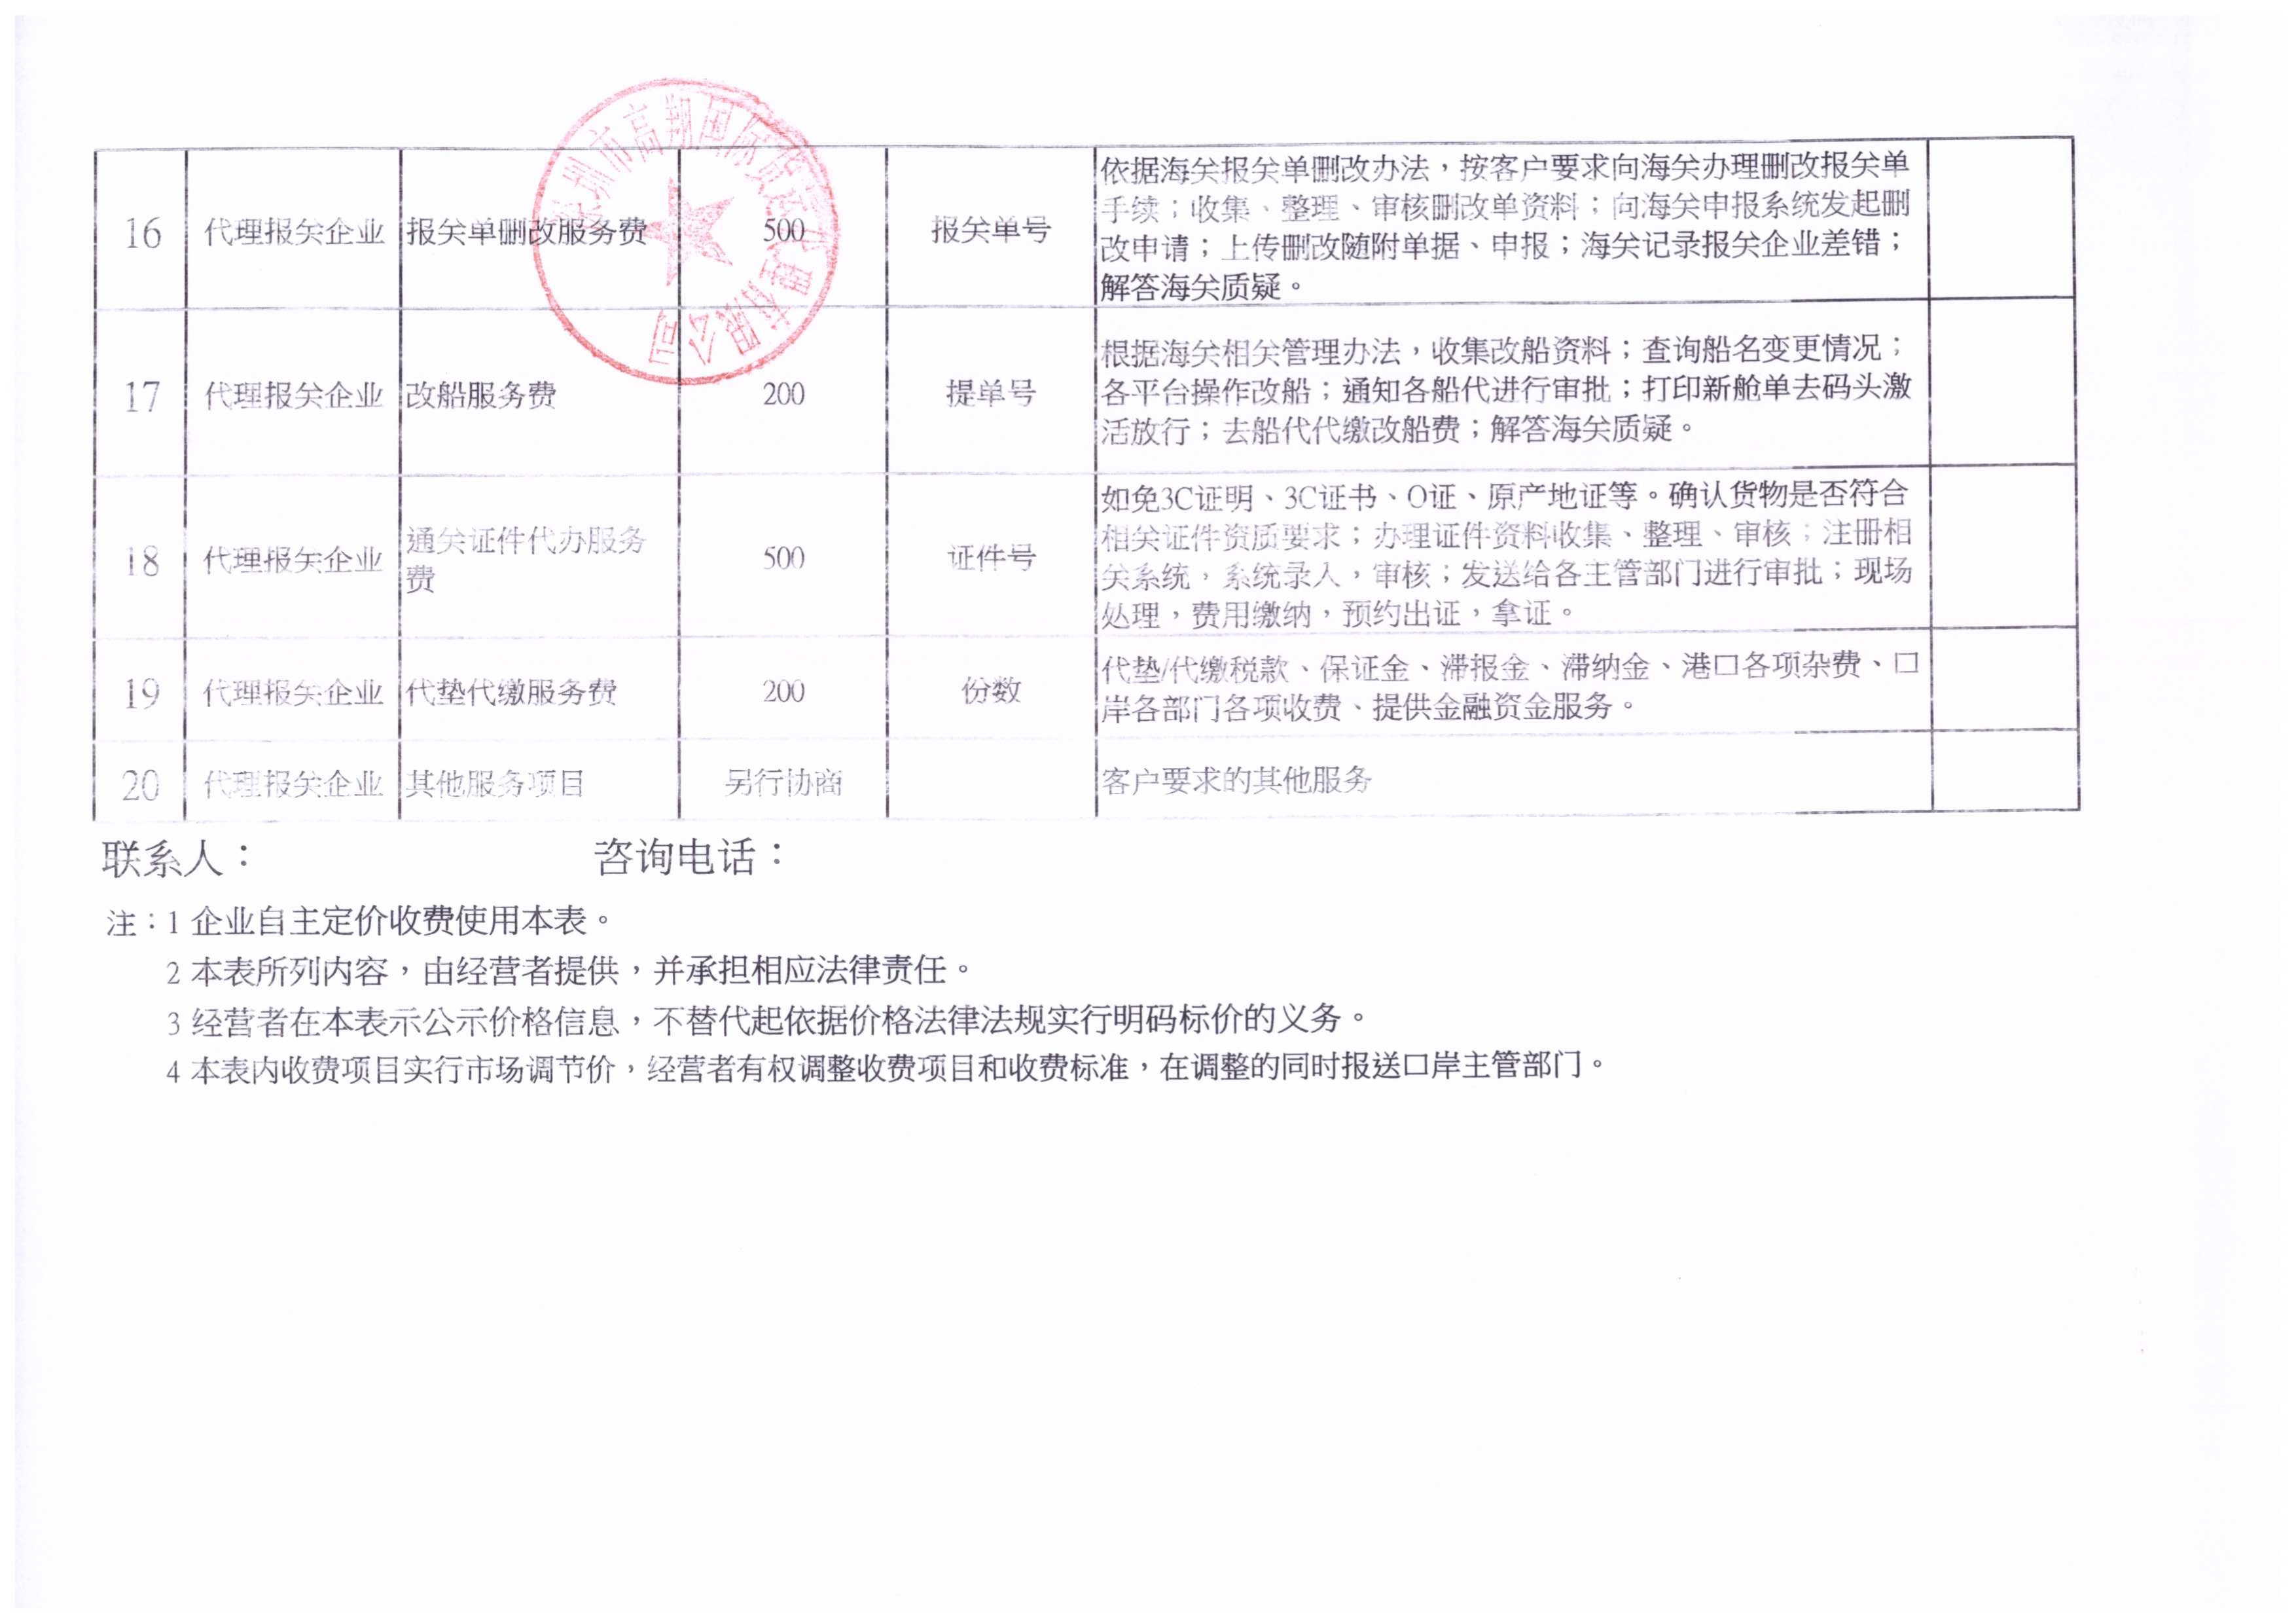 深圳市高翔国际货运代理有限公司收费目录清单_3.jpg